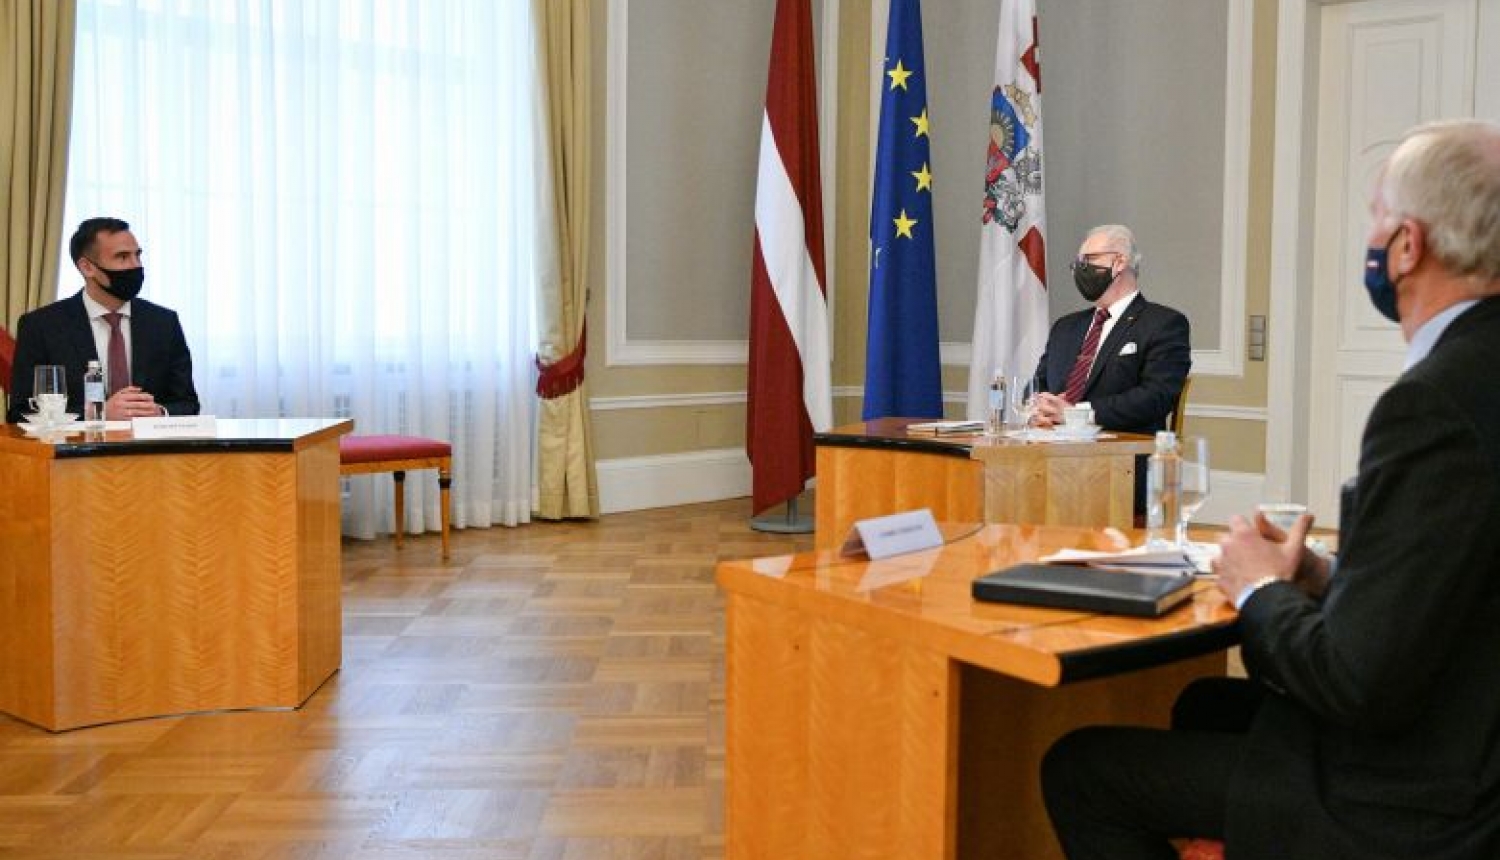 Valsts prezidents un Rīgas mērs: Pašvaldību likumā ir jābūt nostiprinātām galvaspilsētas funkcijām